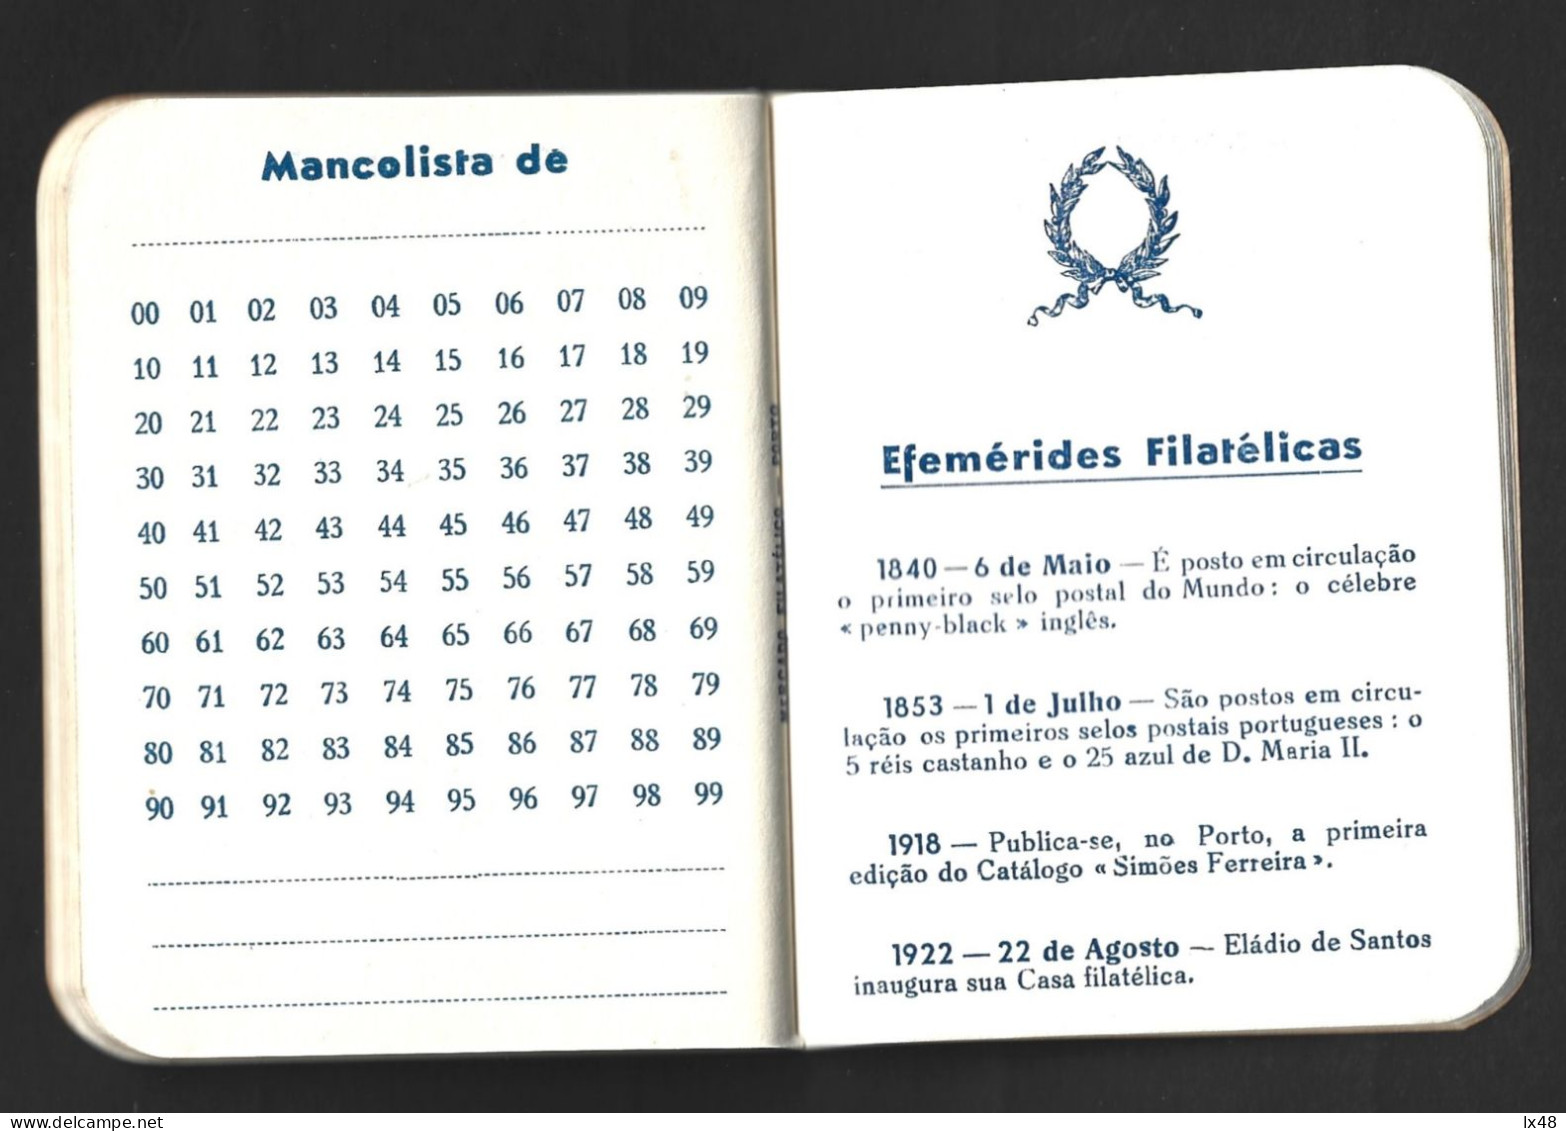 Agenda Filatélica Do Mercado Filatélico, Edição 1958. 25 Réis D. Luís I. Efeméride Filatélicas. Philatelic Market Philat - Book Of The Year